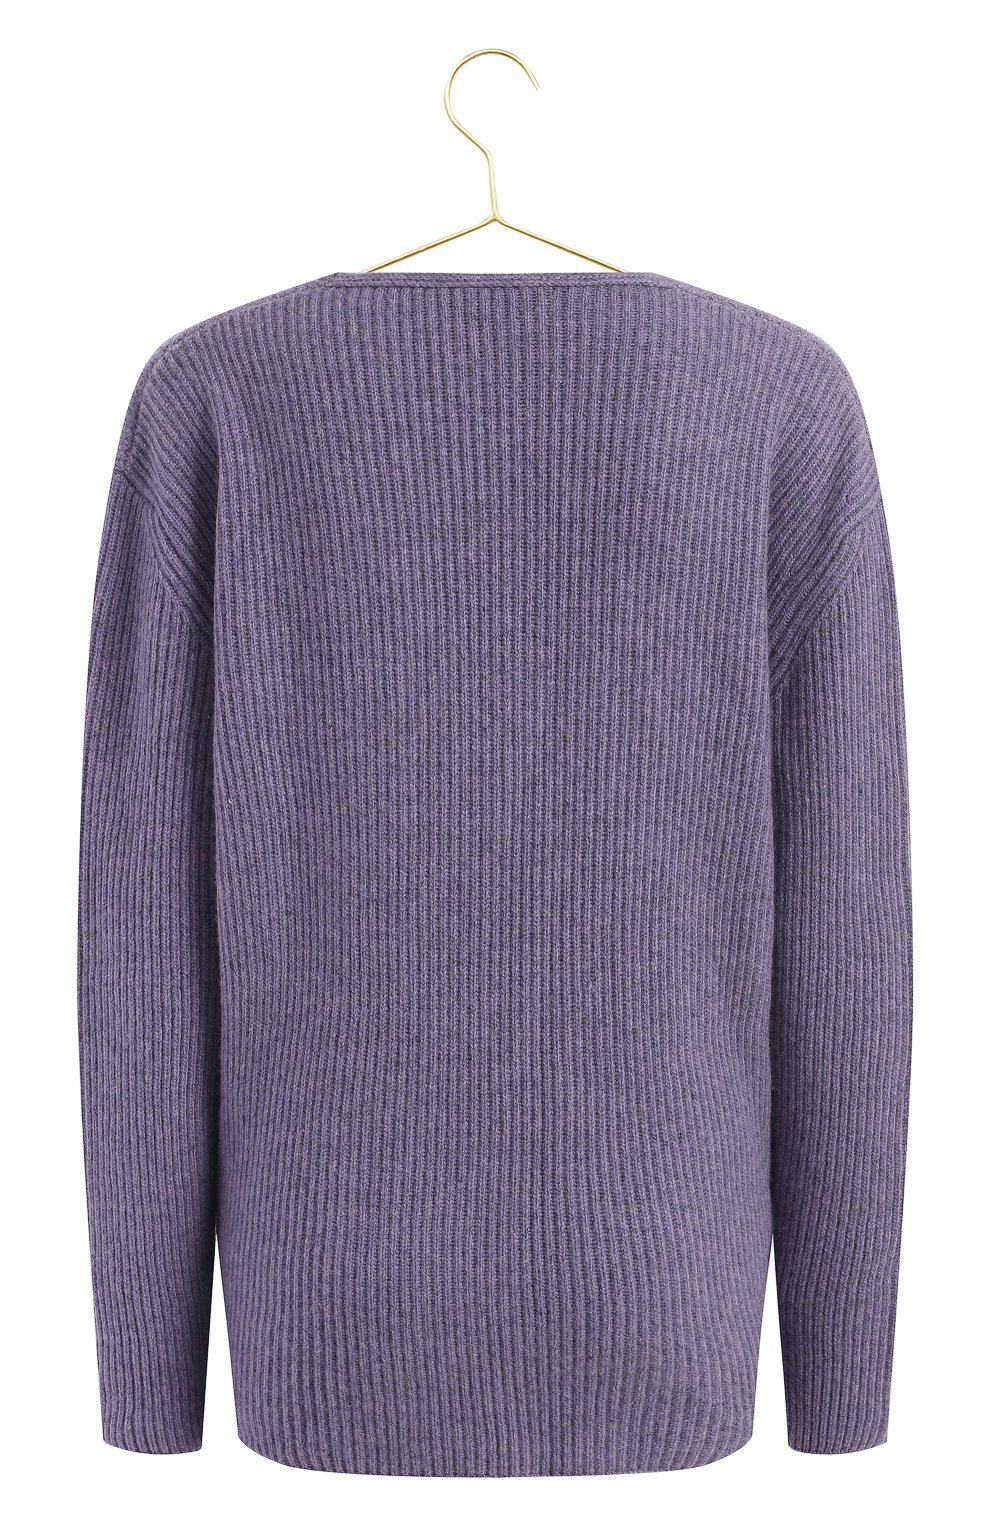 Кашемировый пуловер | Tom Ford | Фиолетовый - 2